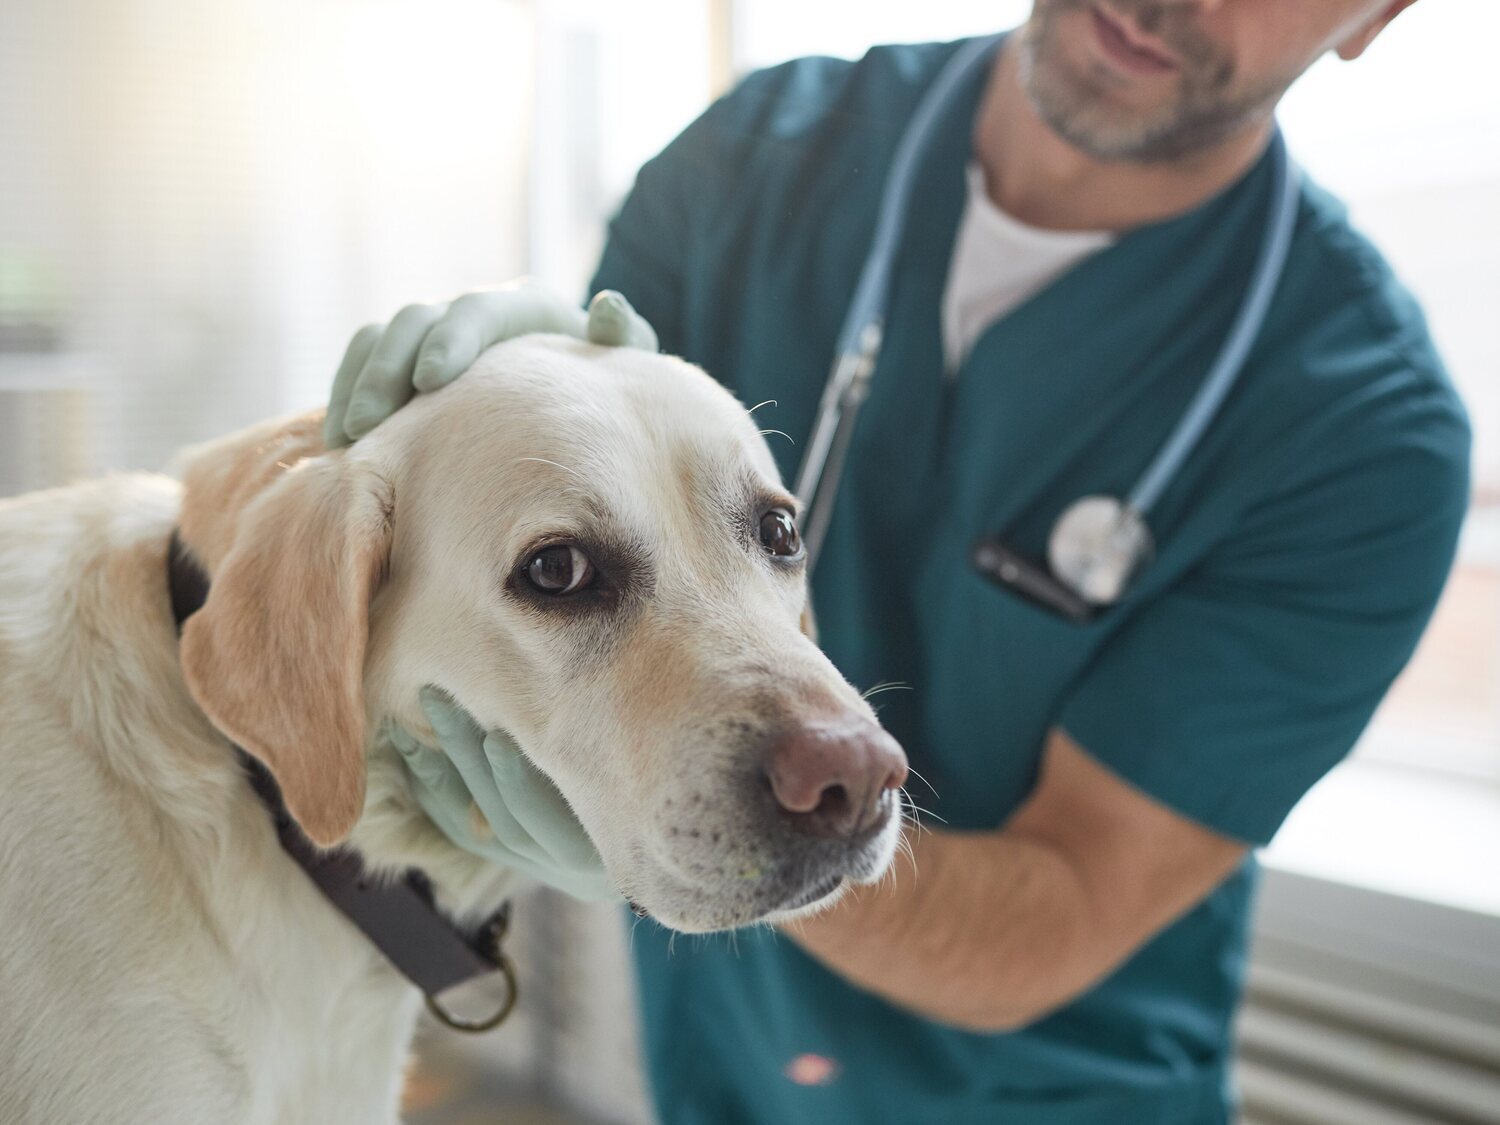 Condenado un veterinario por abusar sexualmente de perros y grabarse haciéndolo